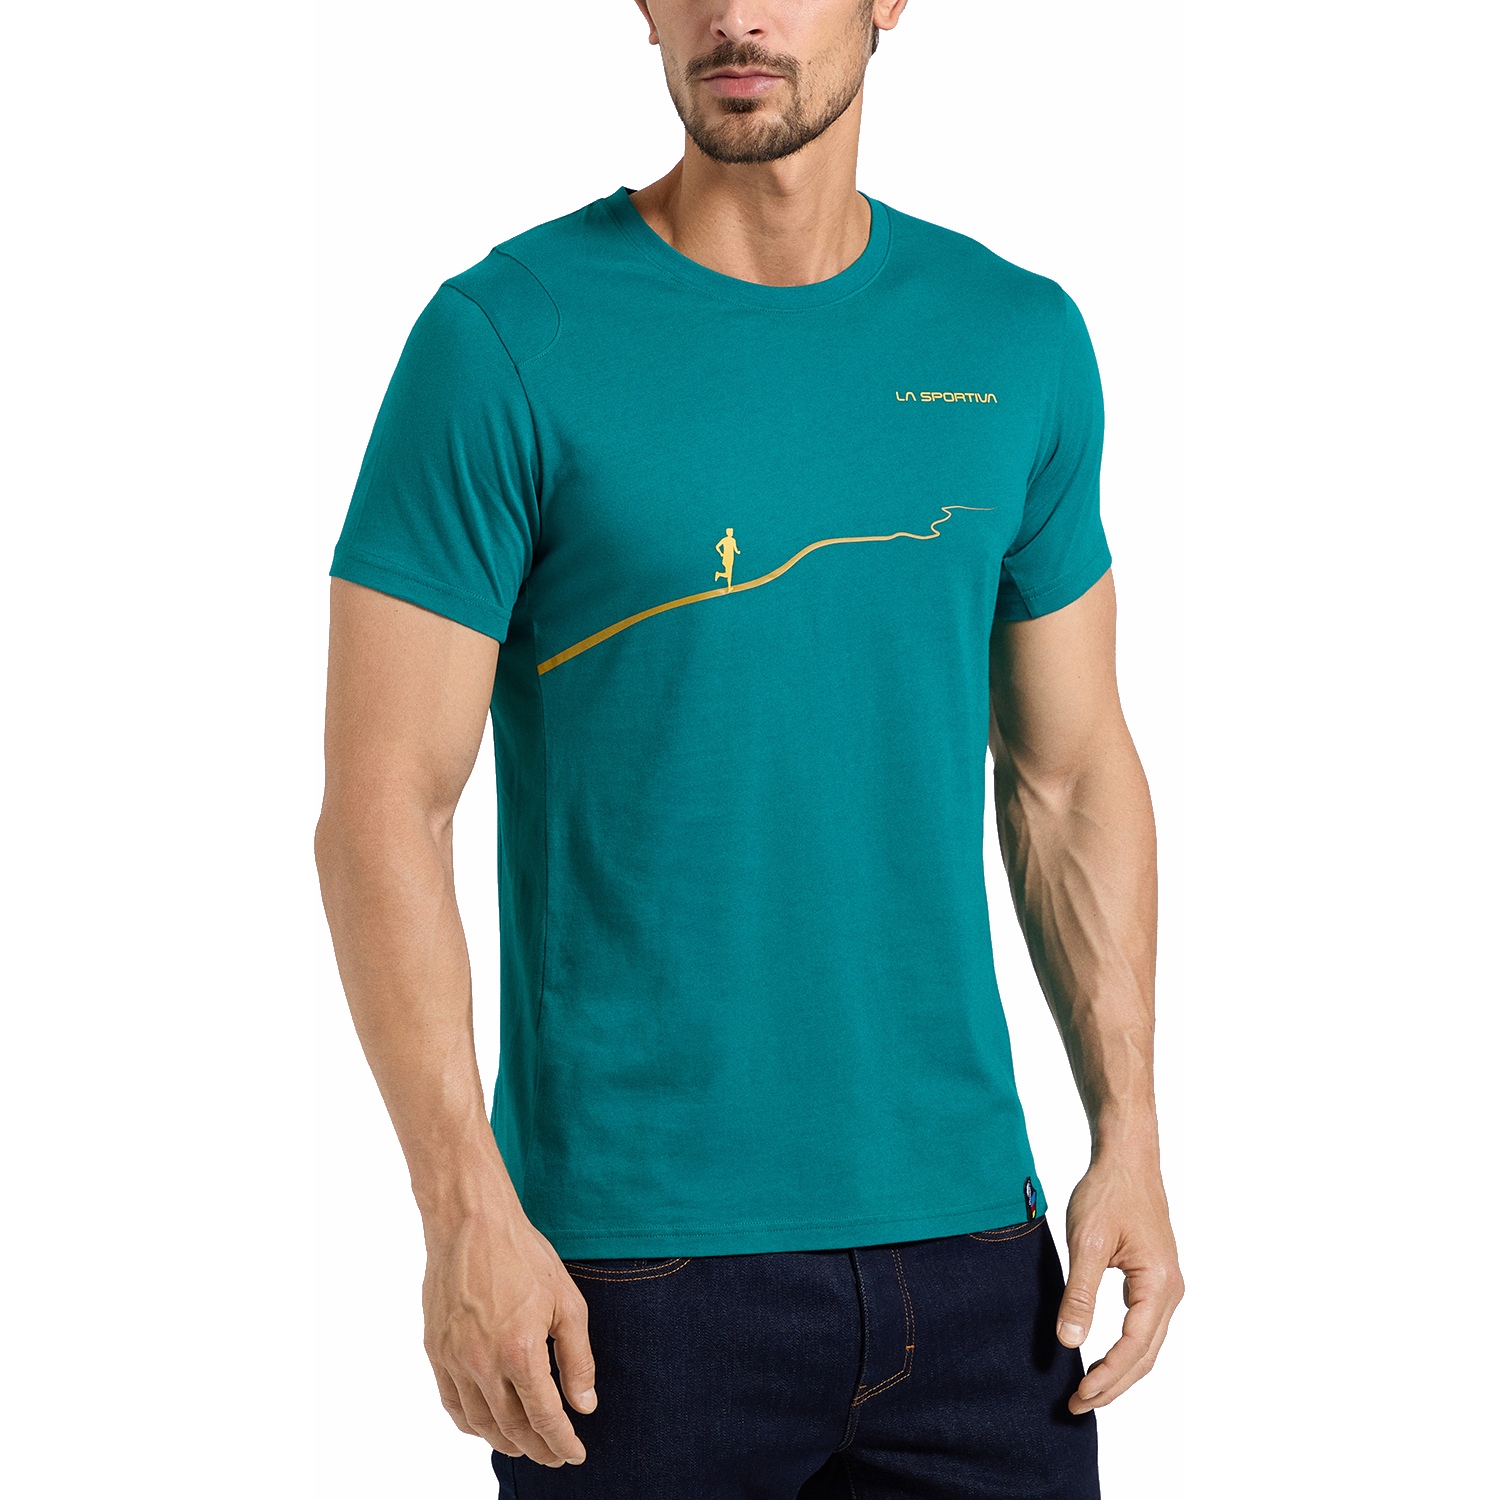 Produktbild von La Sportiva Trail T-Shirt Herren - Everglade